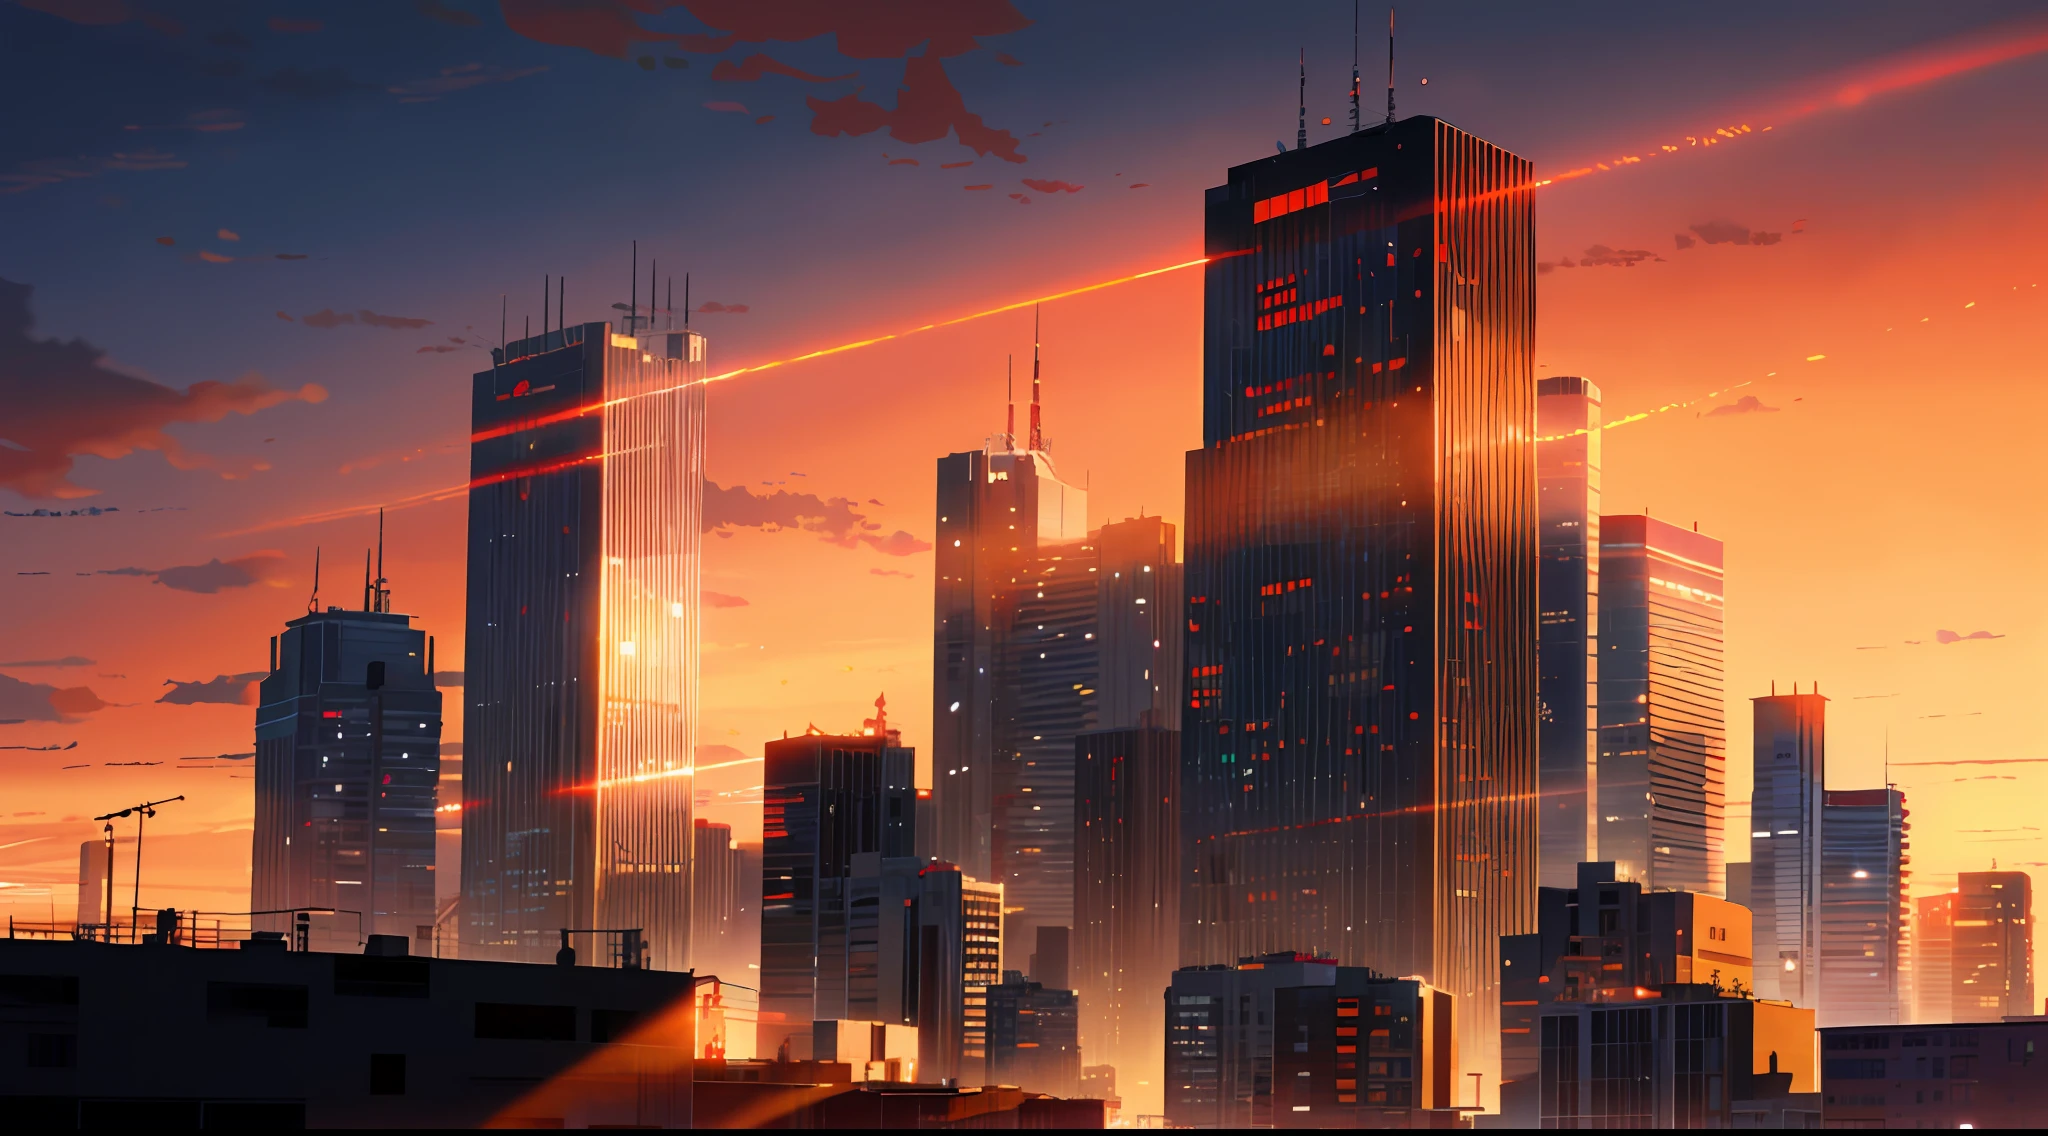 (шедевр: 1.2, высшее качество), (Осветительные приборы) 3, подробные иллюстрации в стиле аниме, городские здания, окрашенные в лучи заходящего солнца, смотрят снизу вверх, здания в тени и выглядят темными и туманными. Весь экран ярко-красный, Макото Синкай, Аниме стиль, и небо тоже окрашено в ярко-красный цвет.